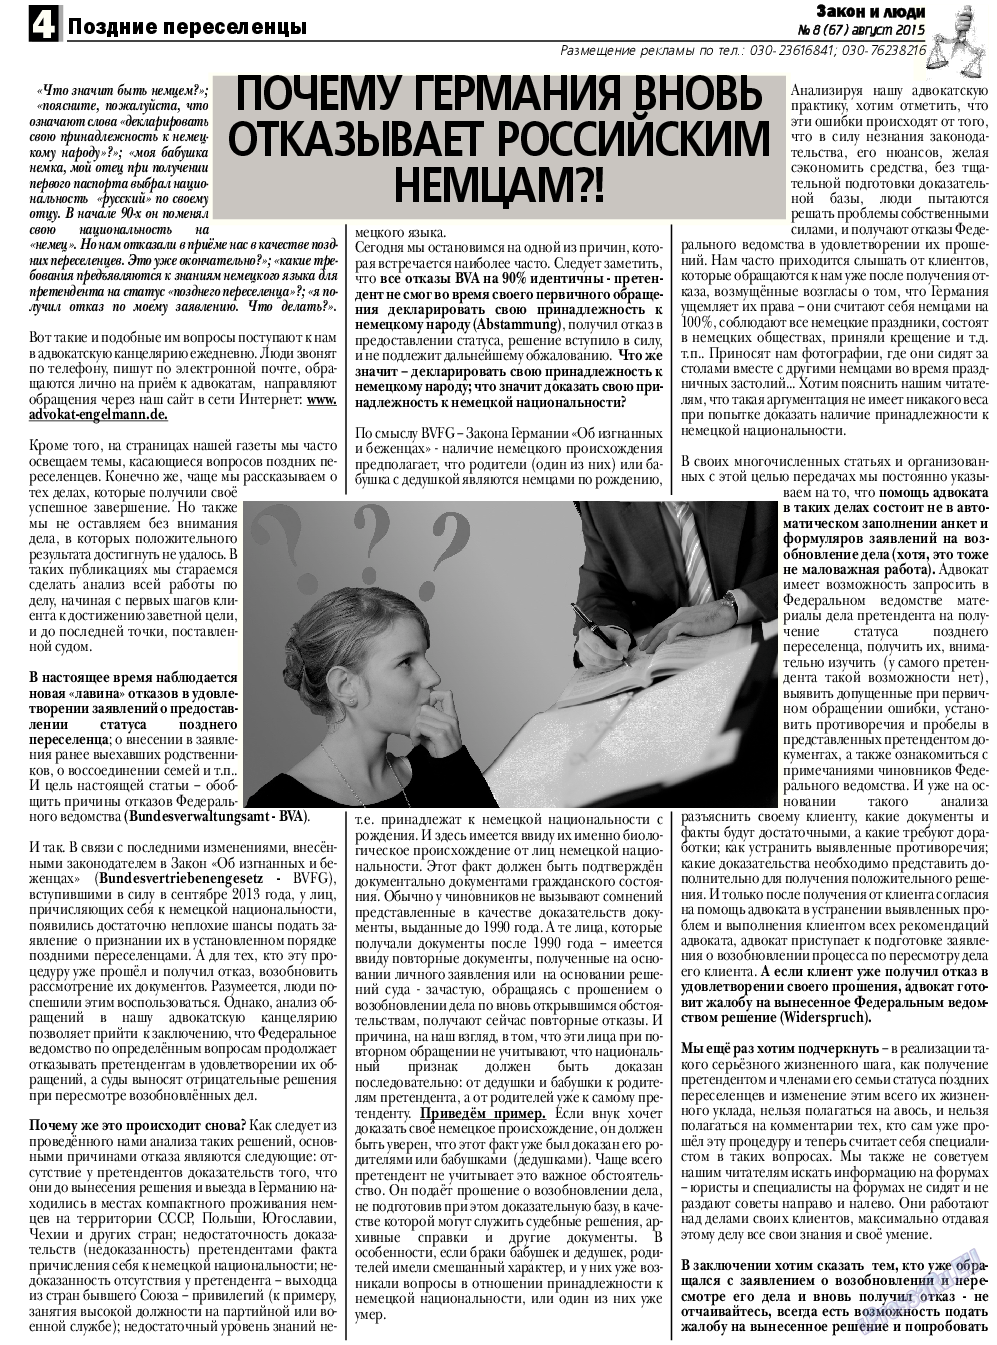 Закон и люди, газета. 2015 №8 стр.4